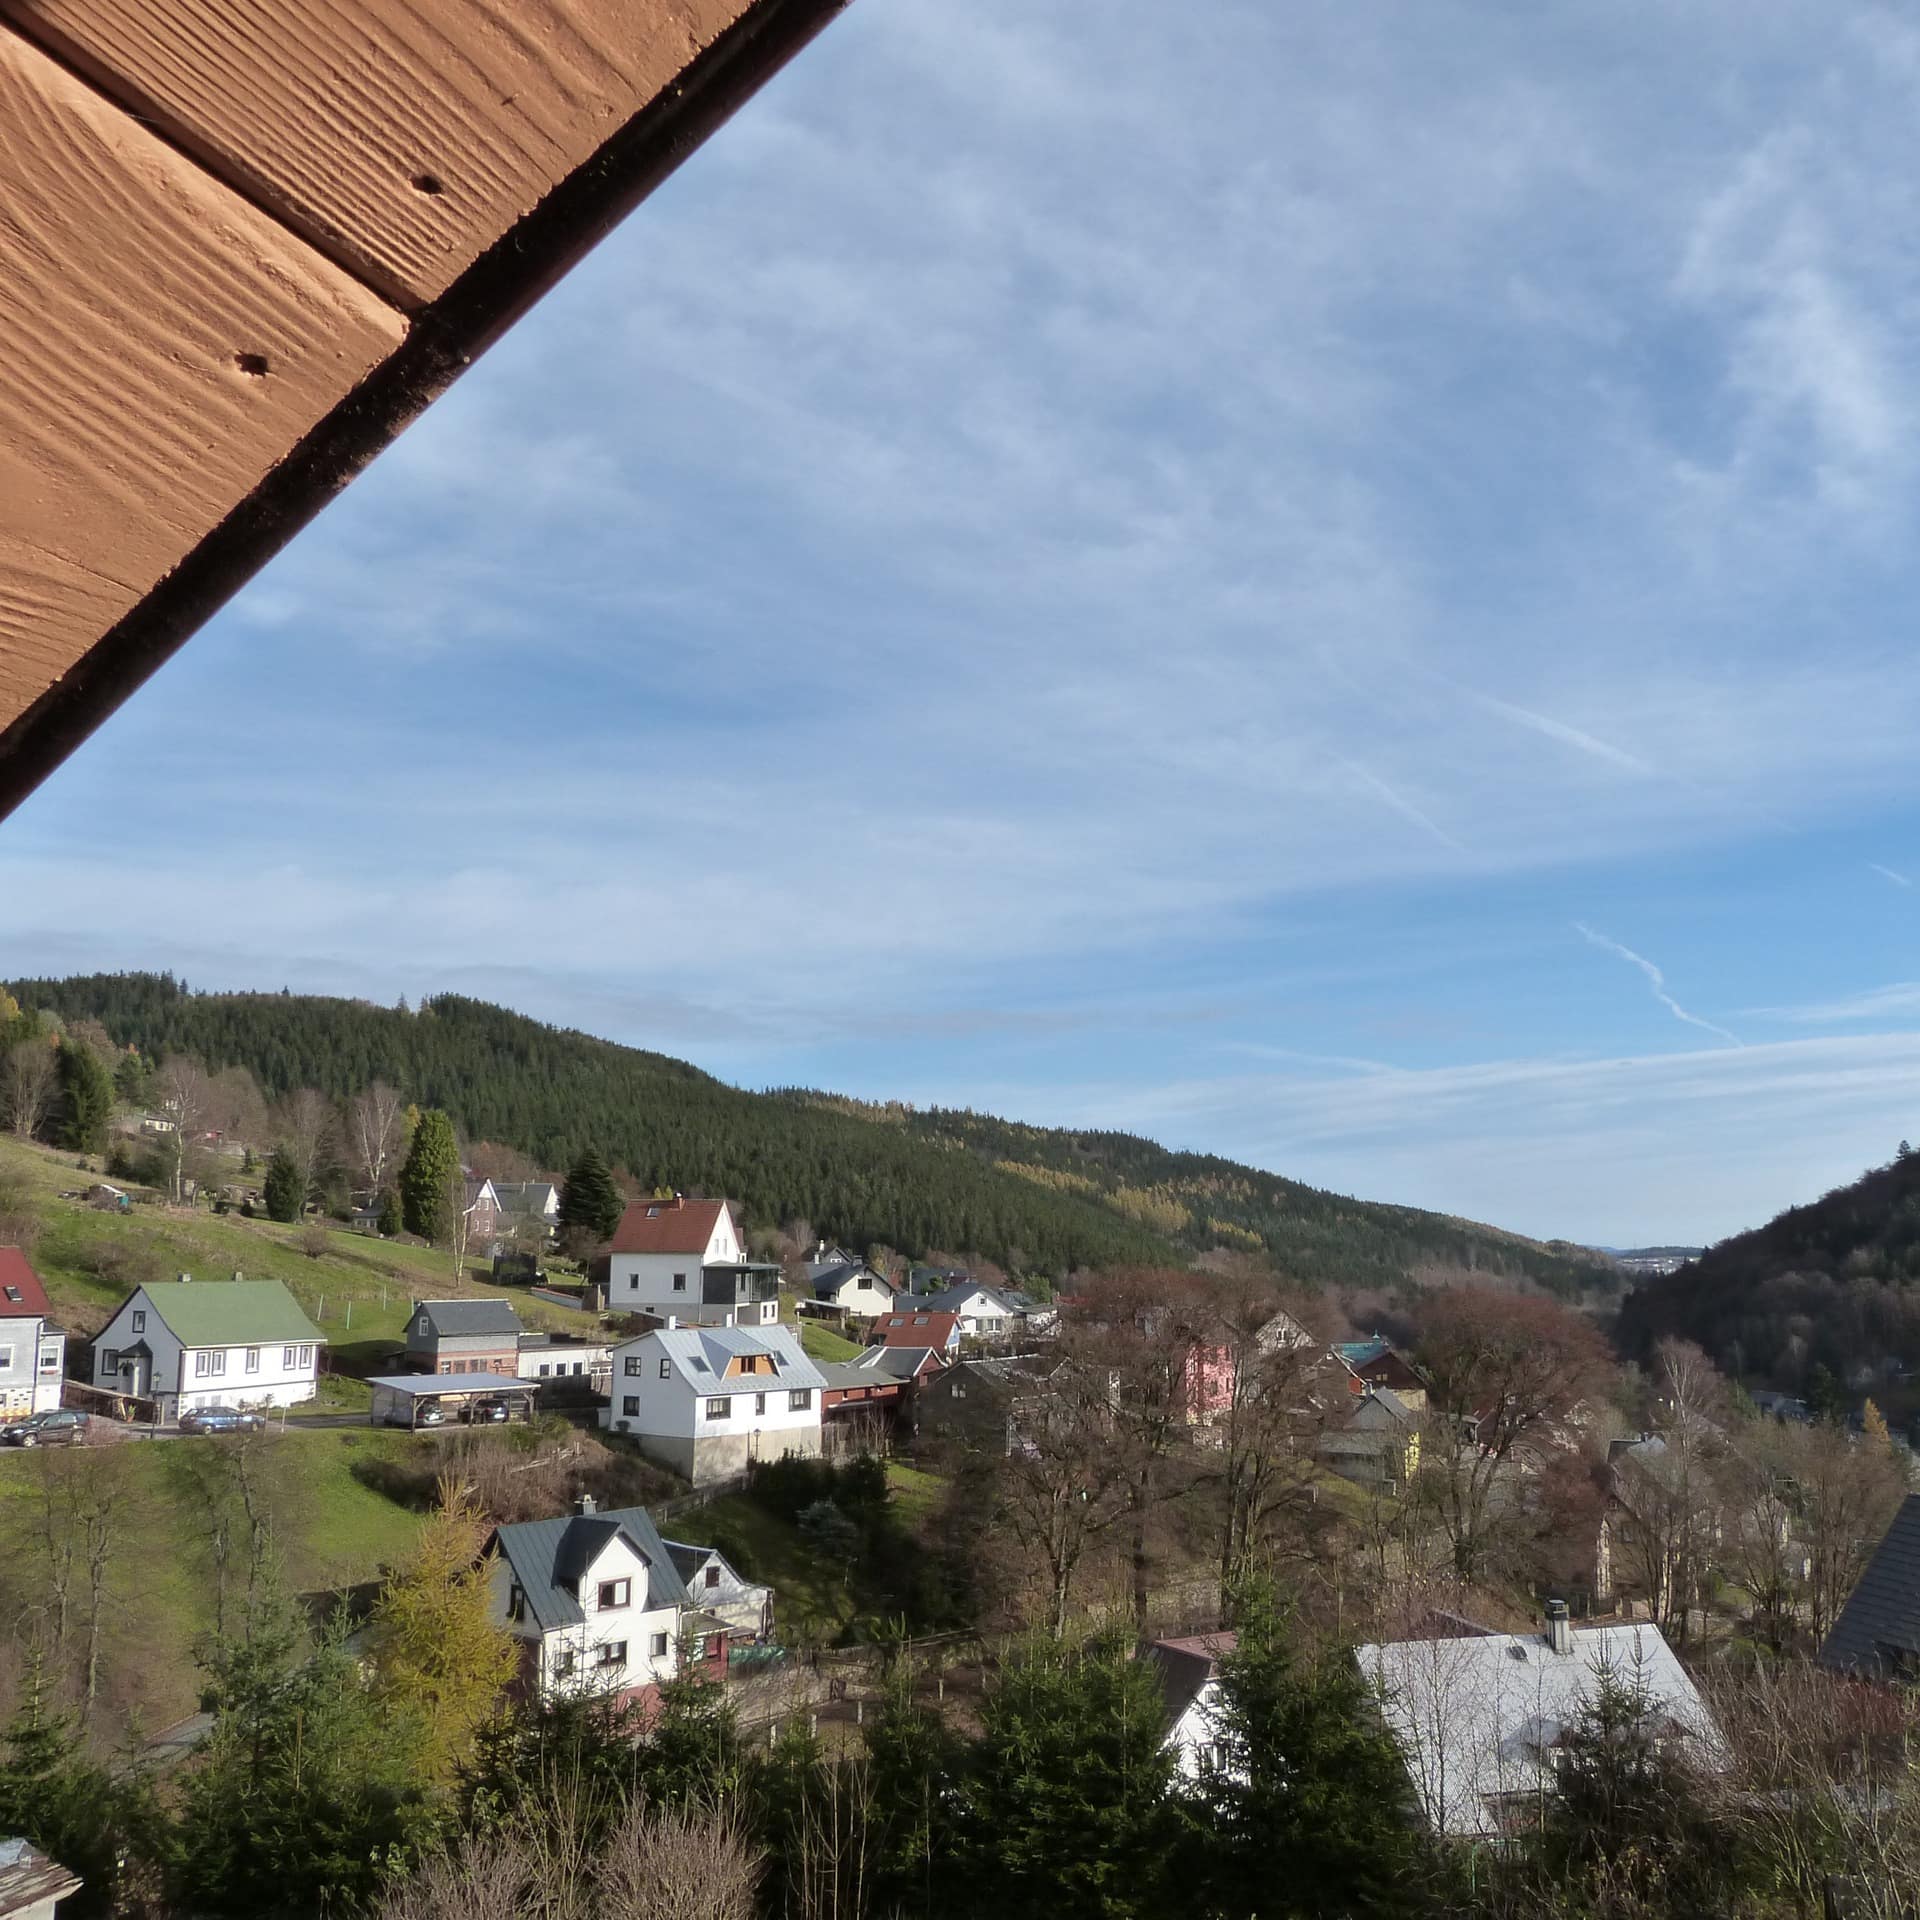 Blick aus einem Dachfenster auf ein Dorf im Thüringer Wald. 